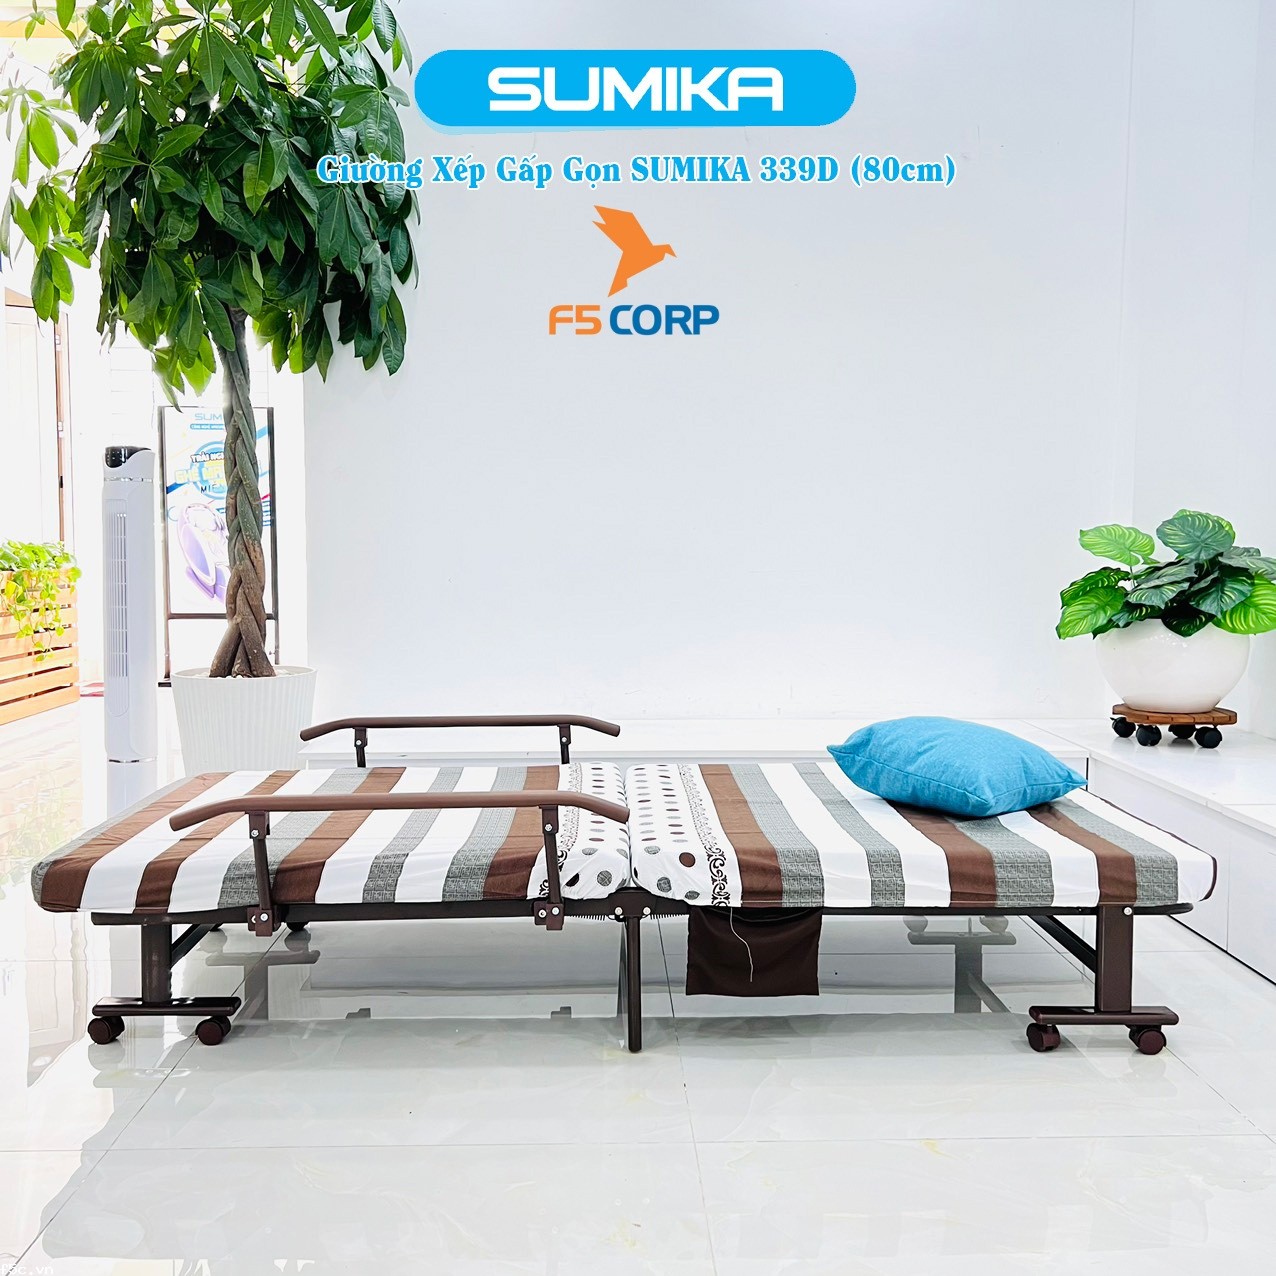 Giường nệm xếp gọn đa năng kiểu dáng Hàn Quốc SUMIKA 339D, rộng 80cm